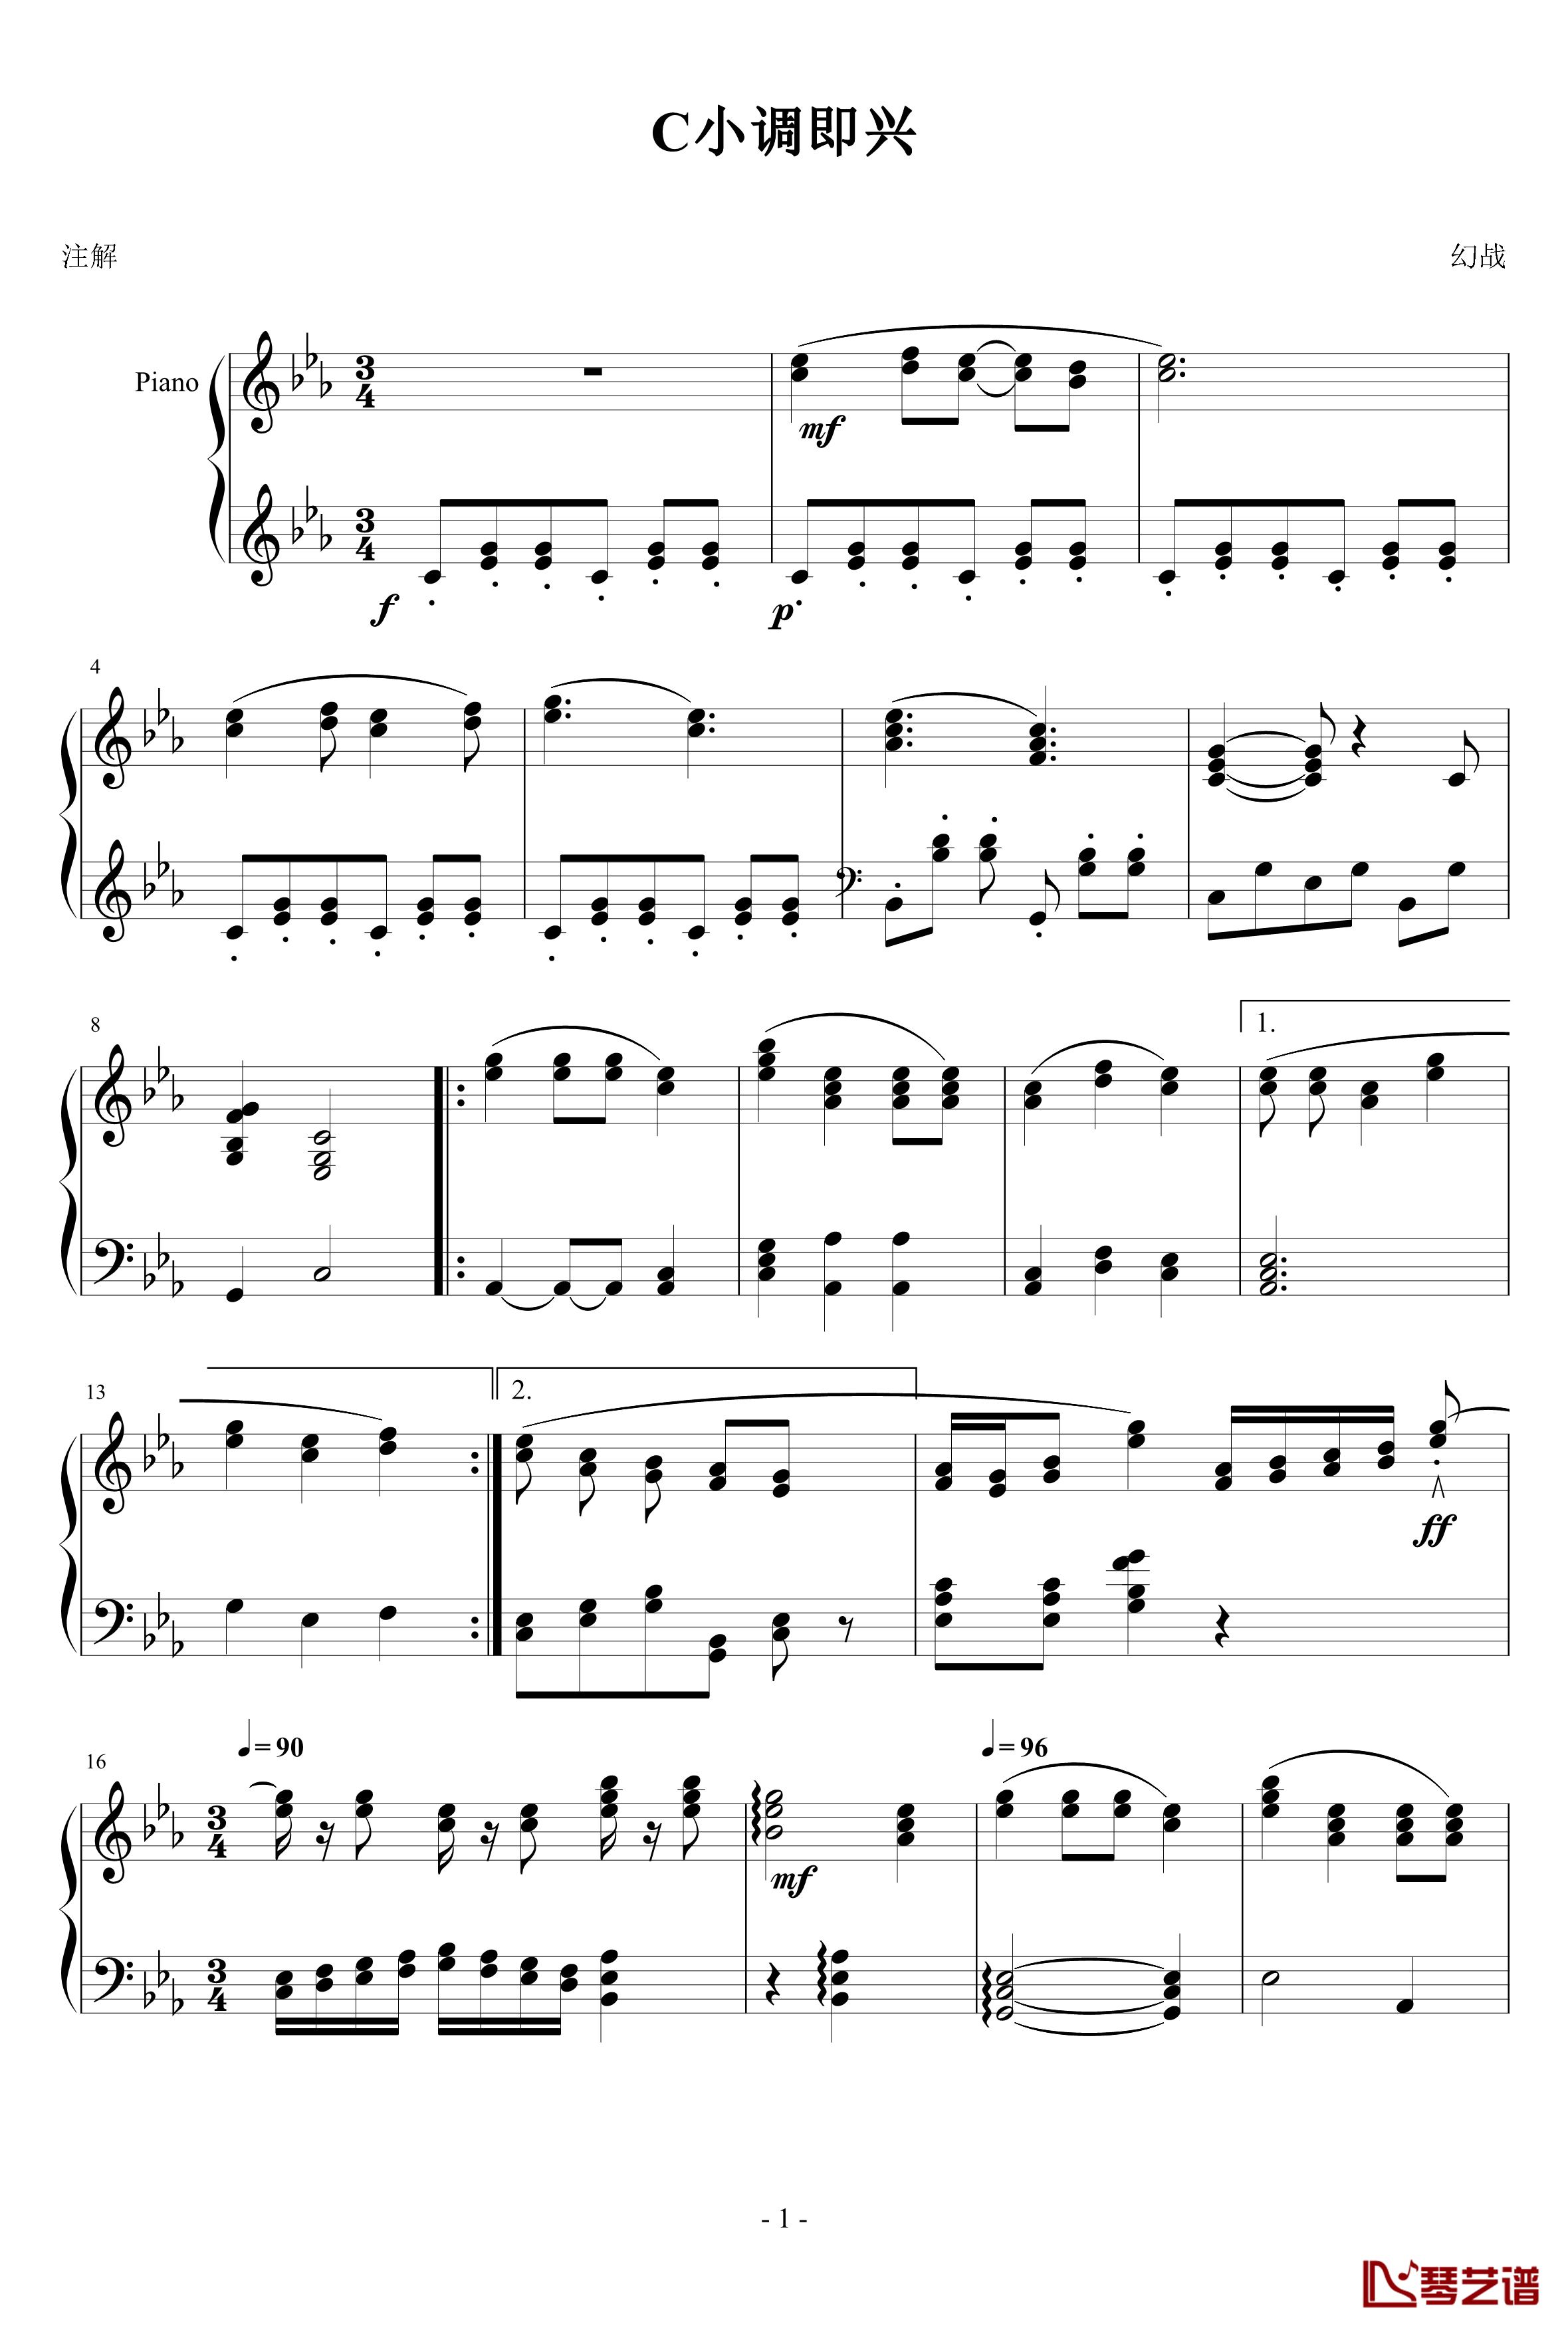 C小调即兴练习钢琴谱-幻战